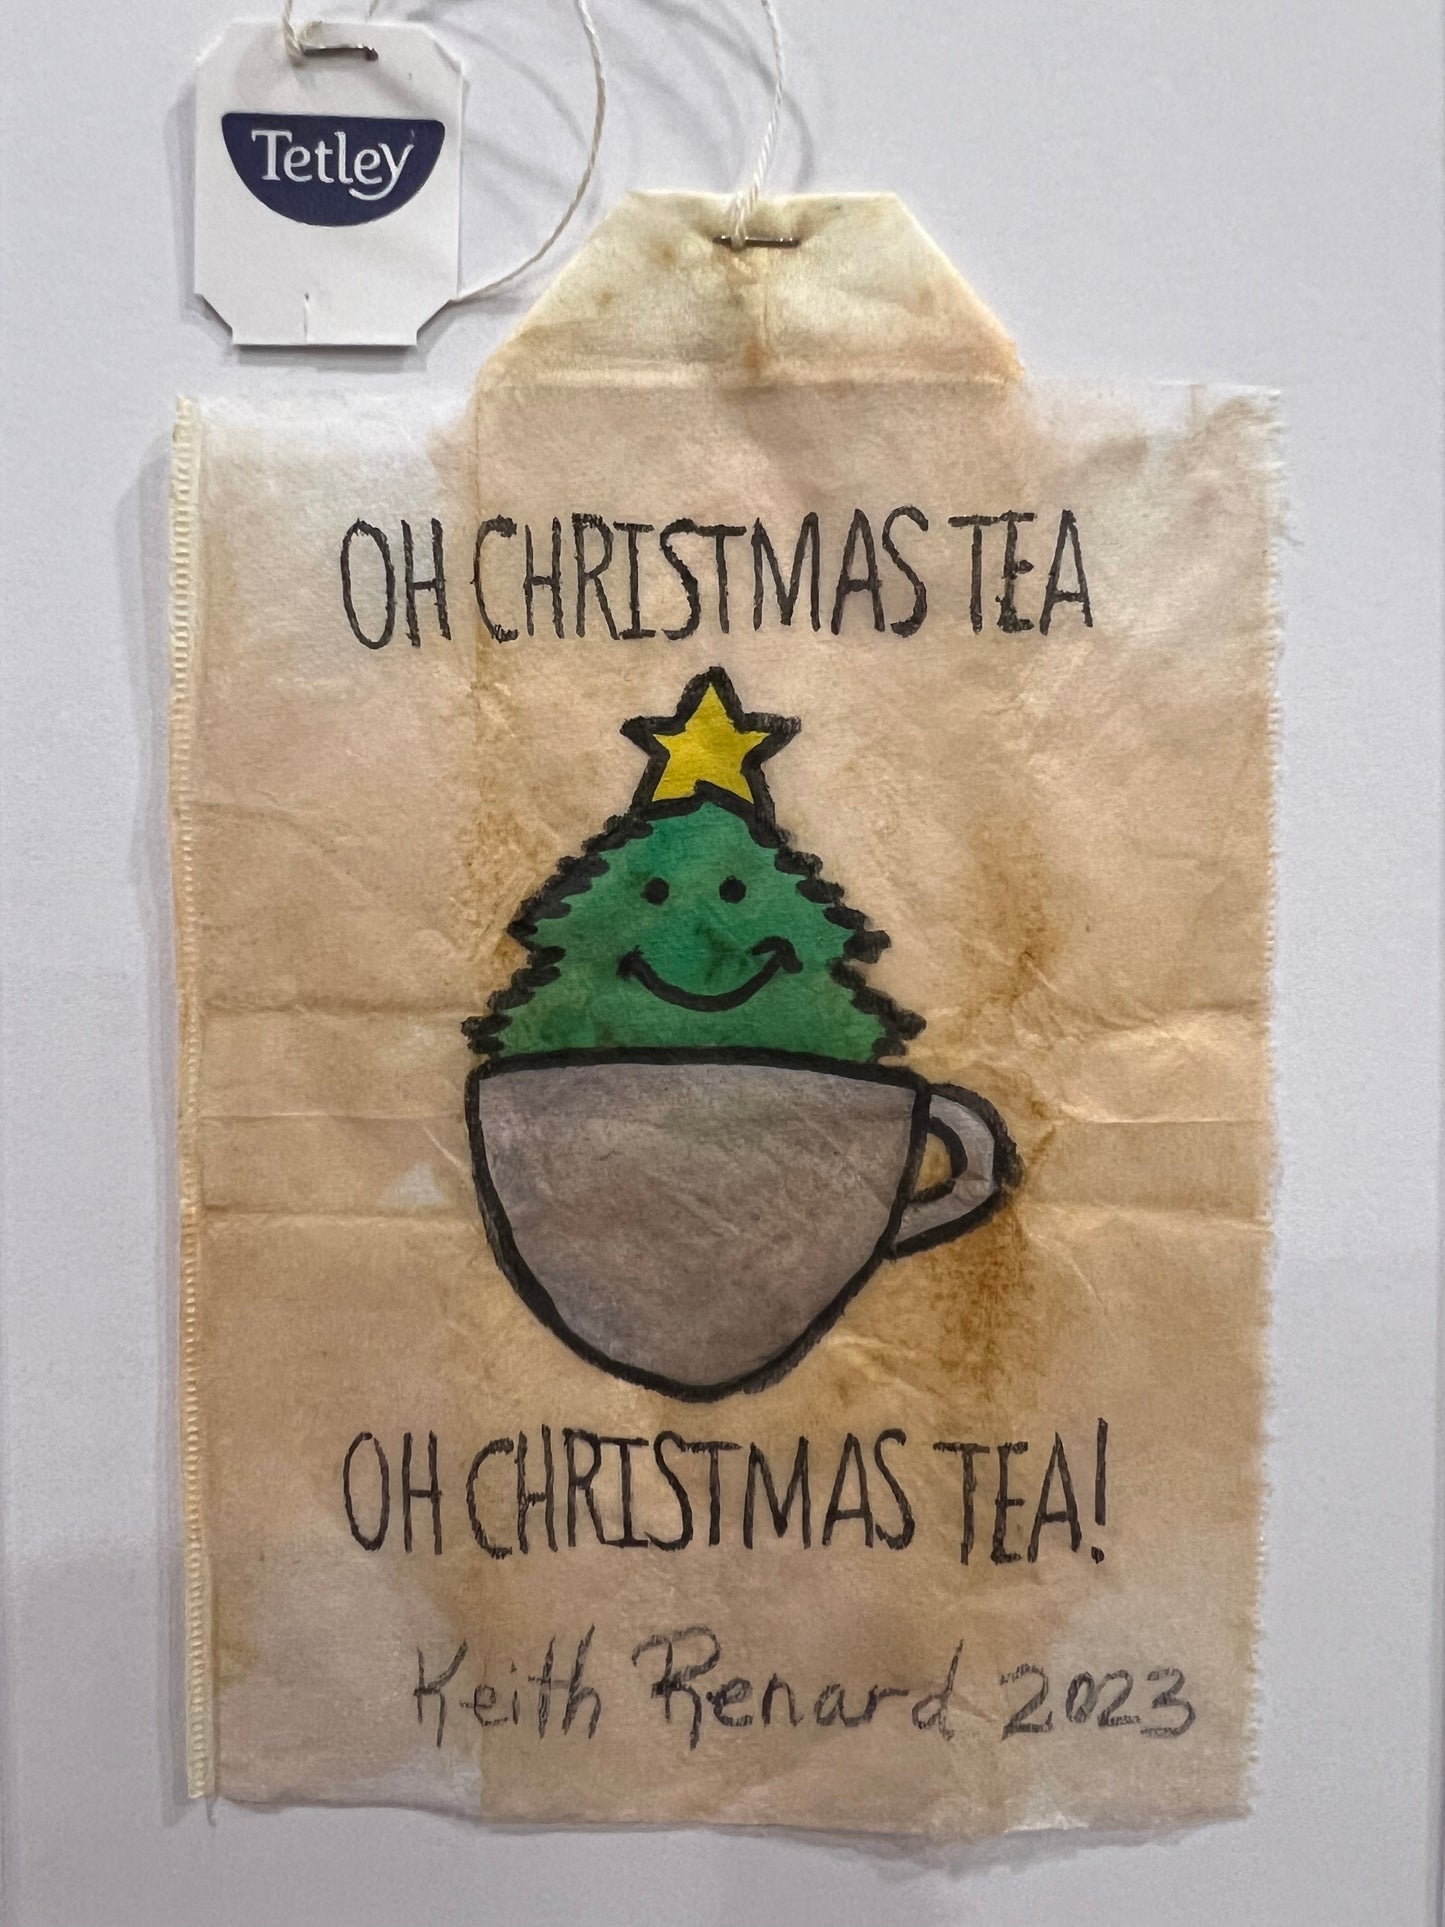 Oh Christmas Tea, Oh Christmas Tea